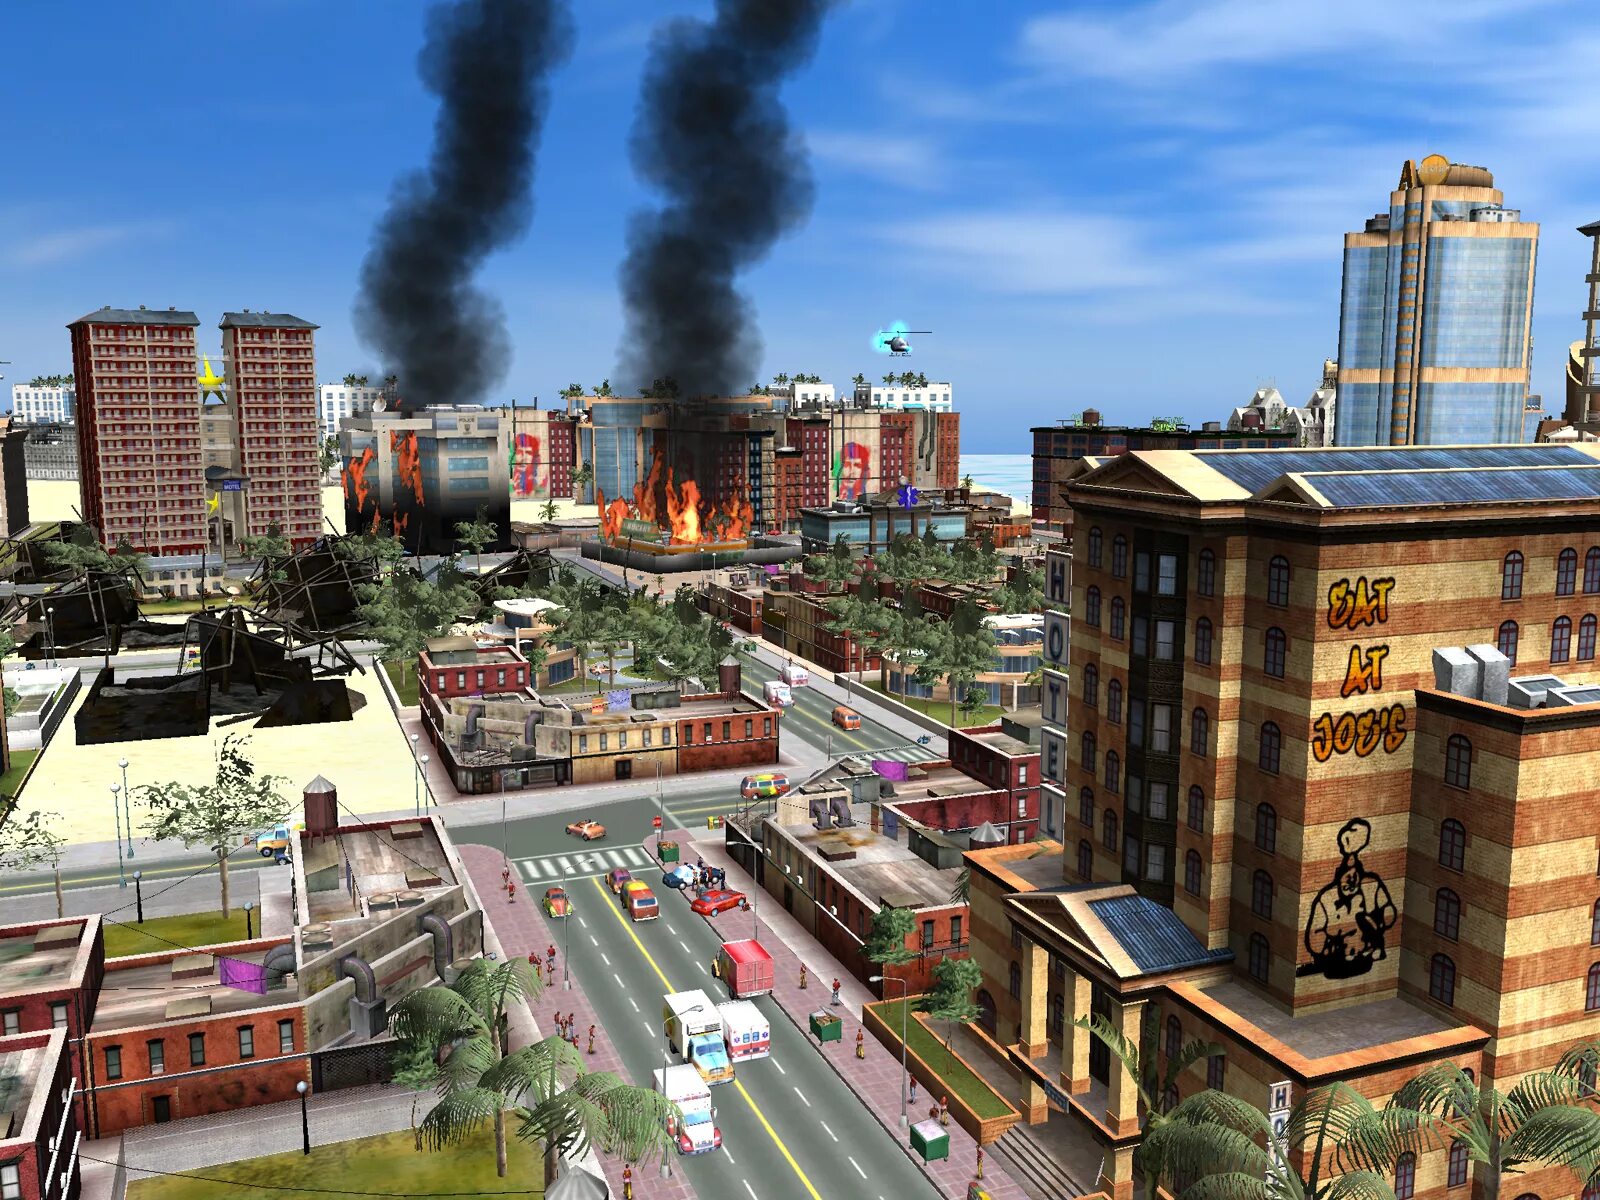 City Life игра. Сити лайф игра 2016. Симсити CITYLIFE. City Life: город твоей мечты градостроительные симуляторы.